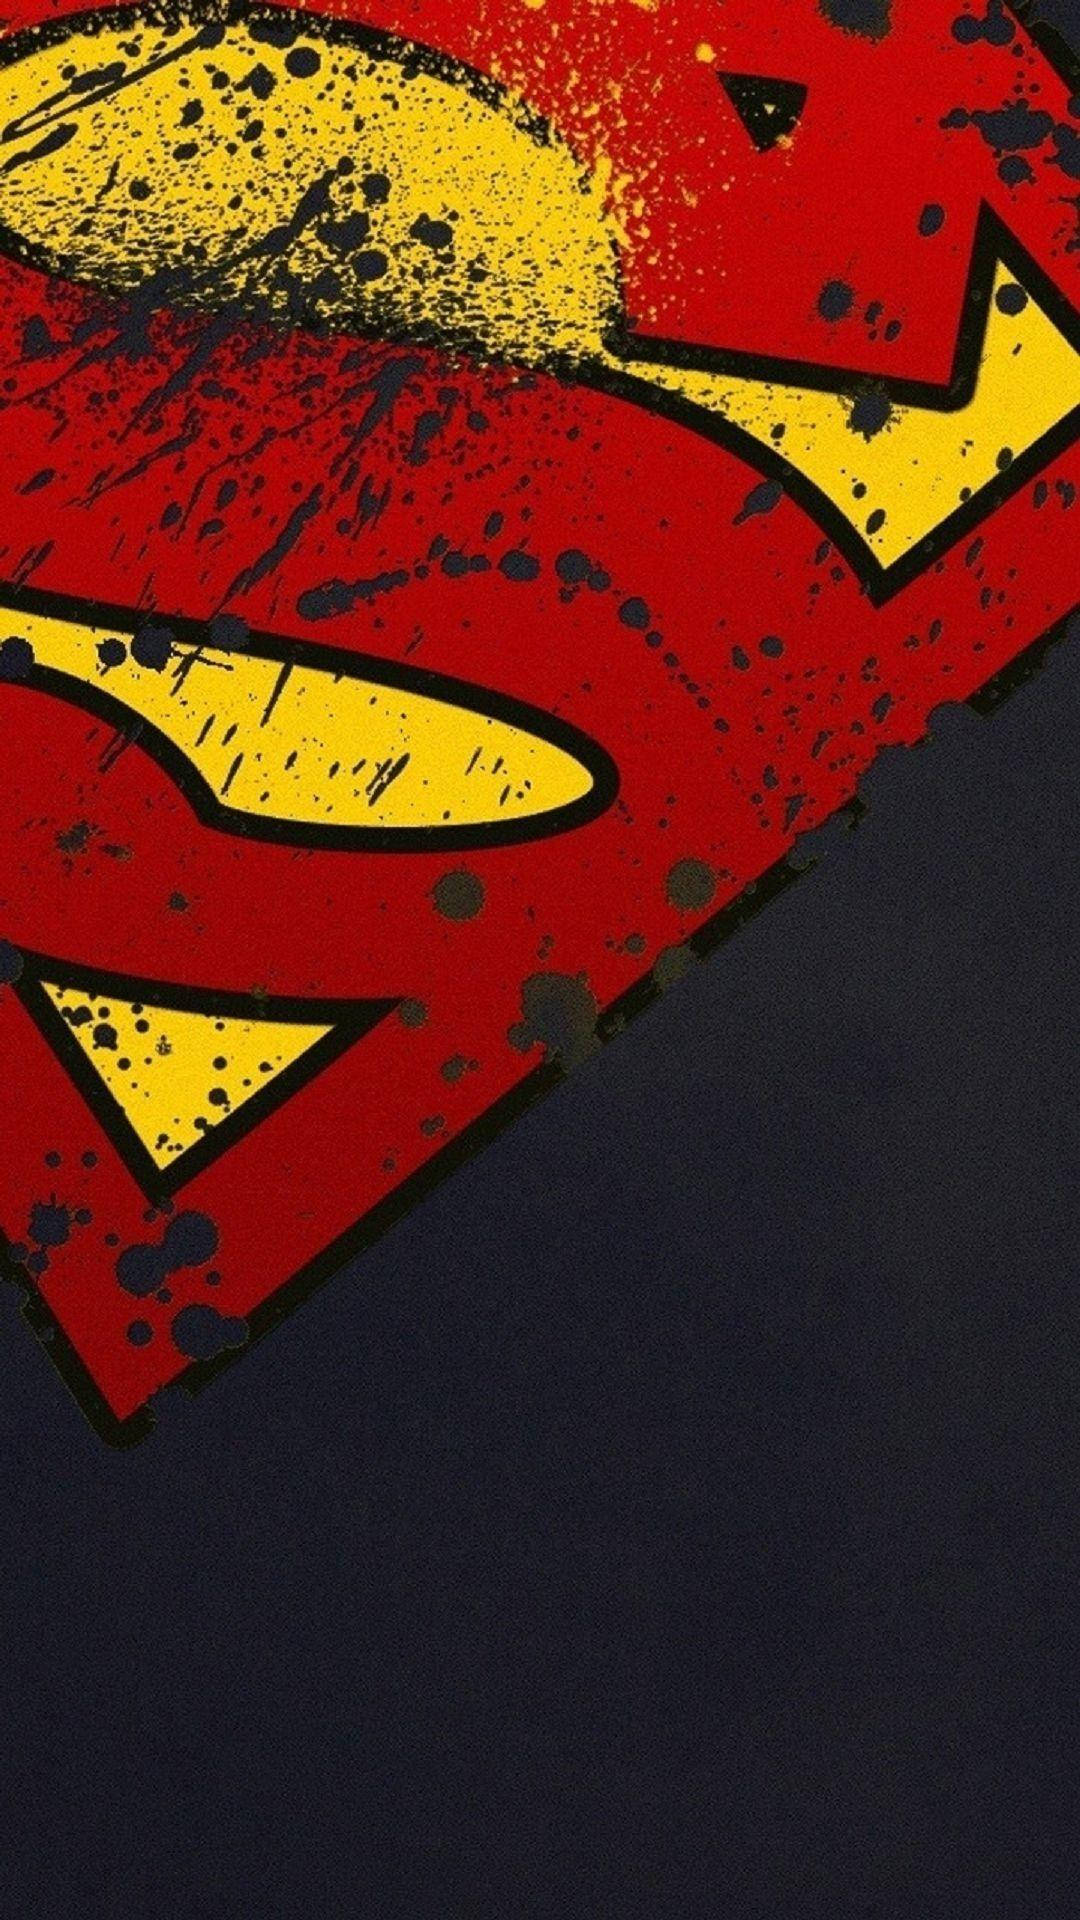 Caption: Valiant Superman Symbol On Iphone Background